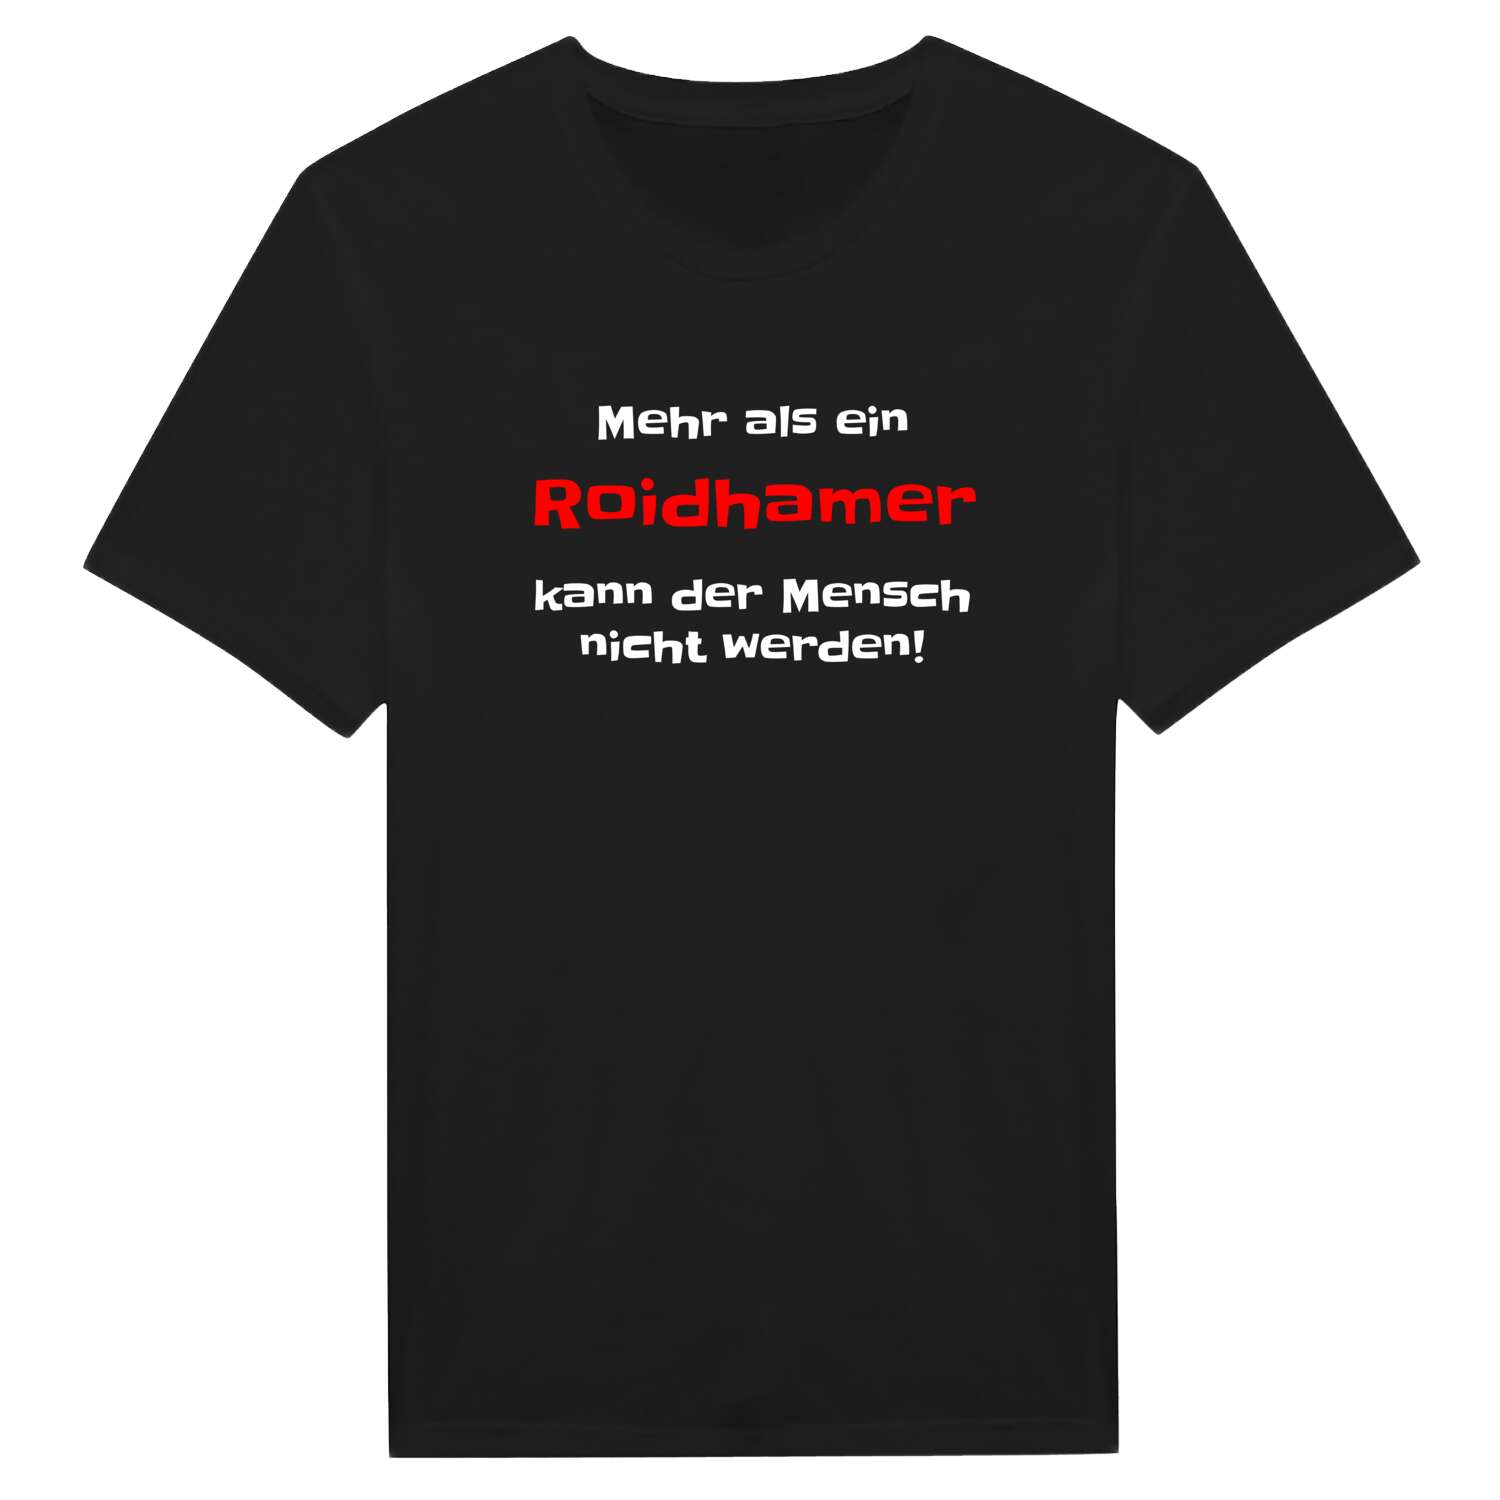 Roidham T-Shirt »Mehr als ein«